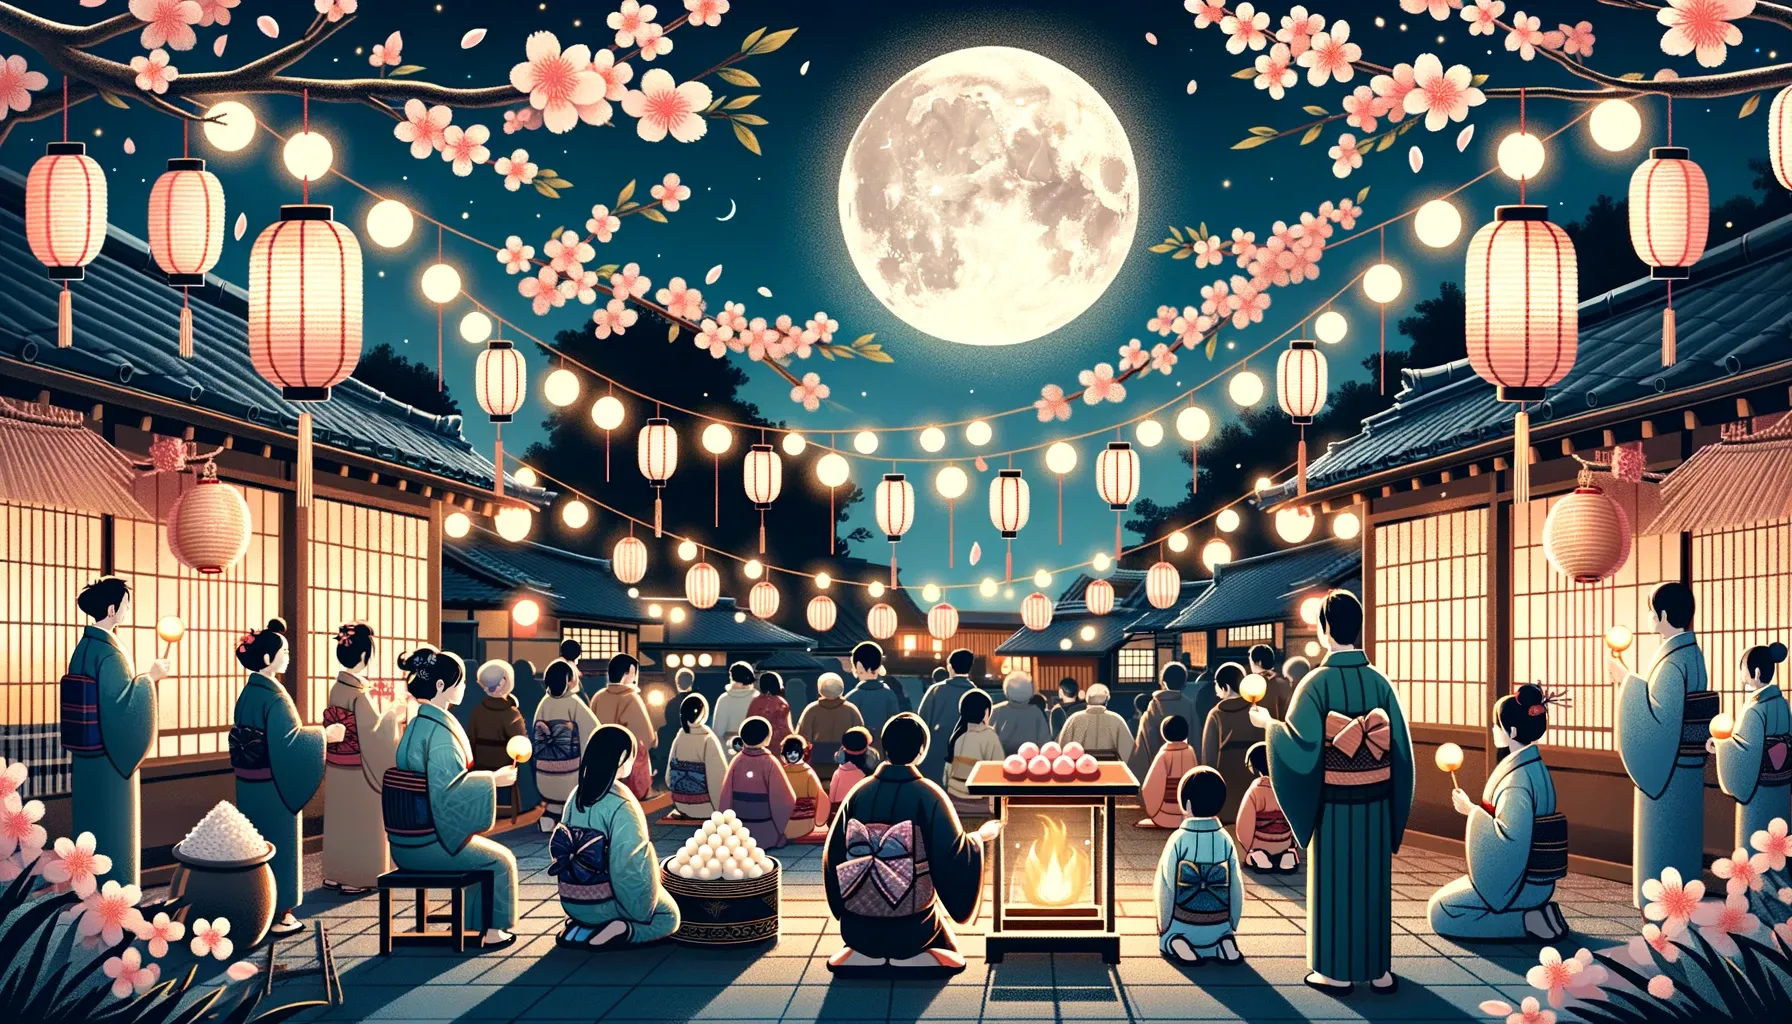 Gente celebrando el festival Tsukimi en honor a Tsukuyomi, con decoraciones tradicionales y una luna llena en el cielo.